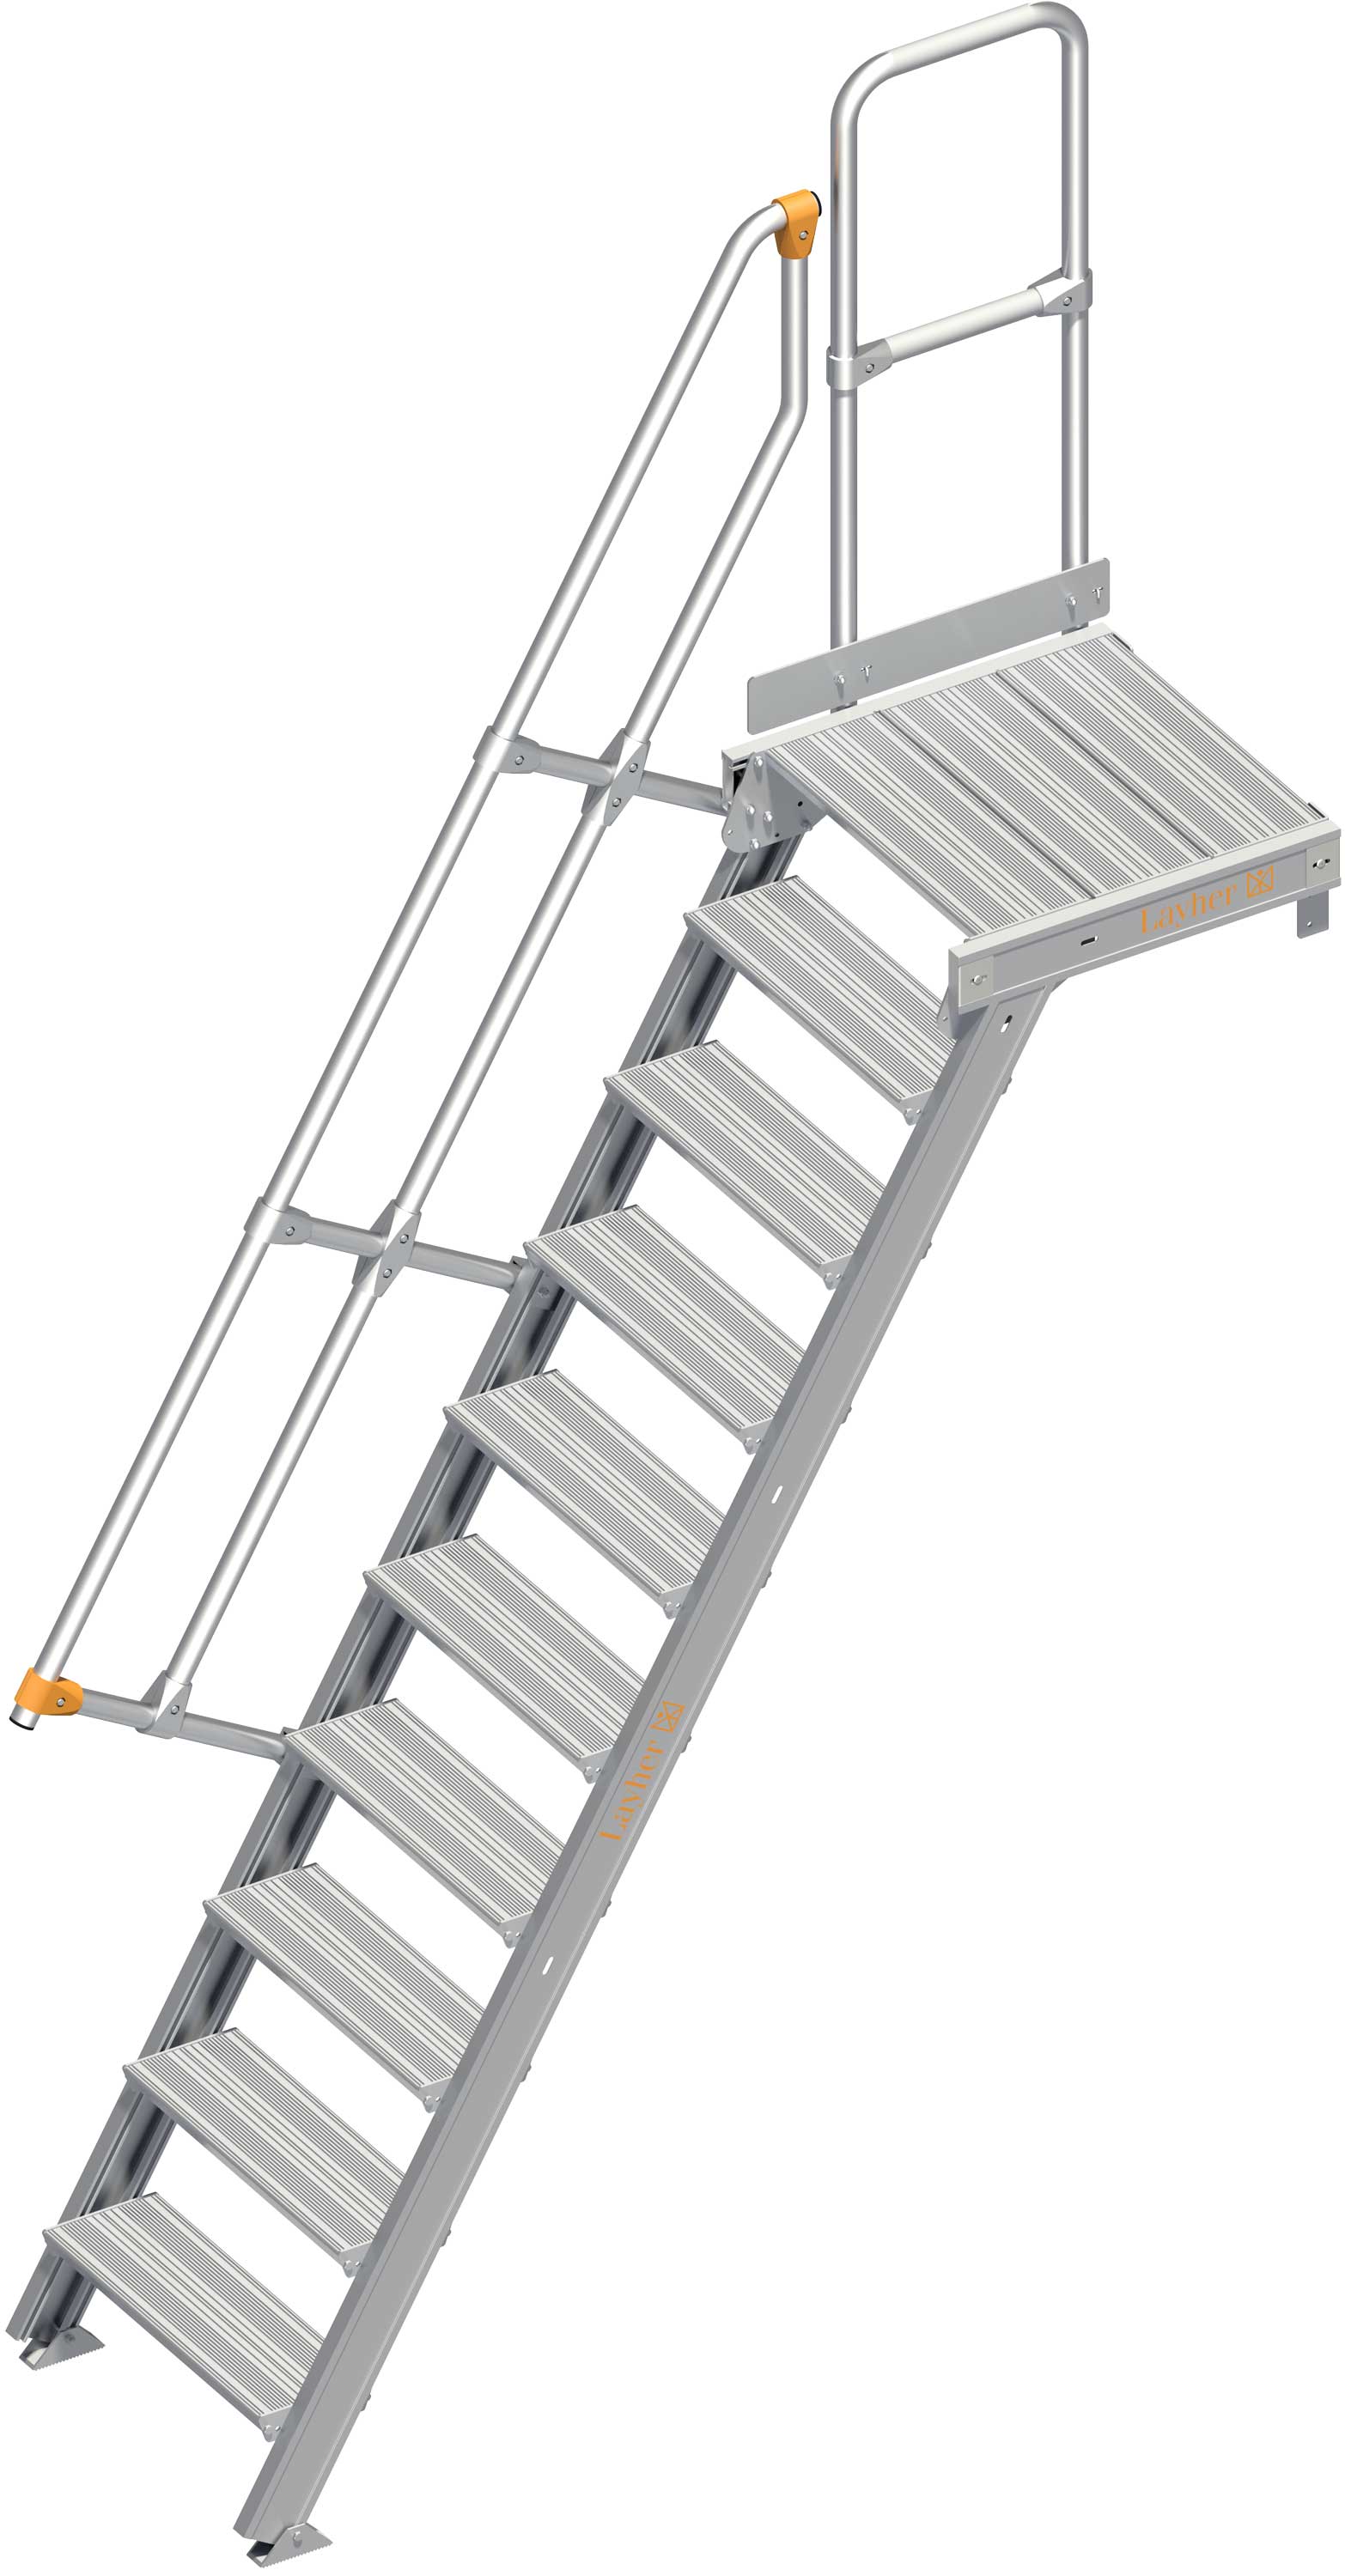 Layher Plattformtreppe 60° SG 10 Stufen - 600 mm breit